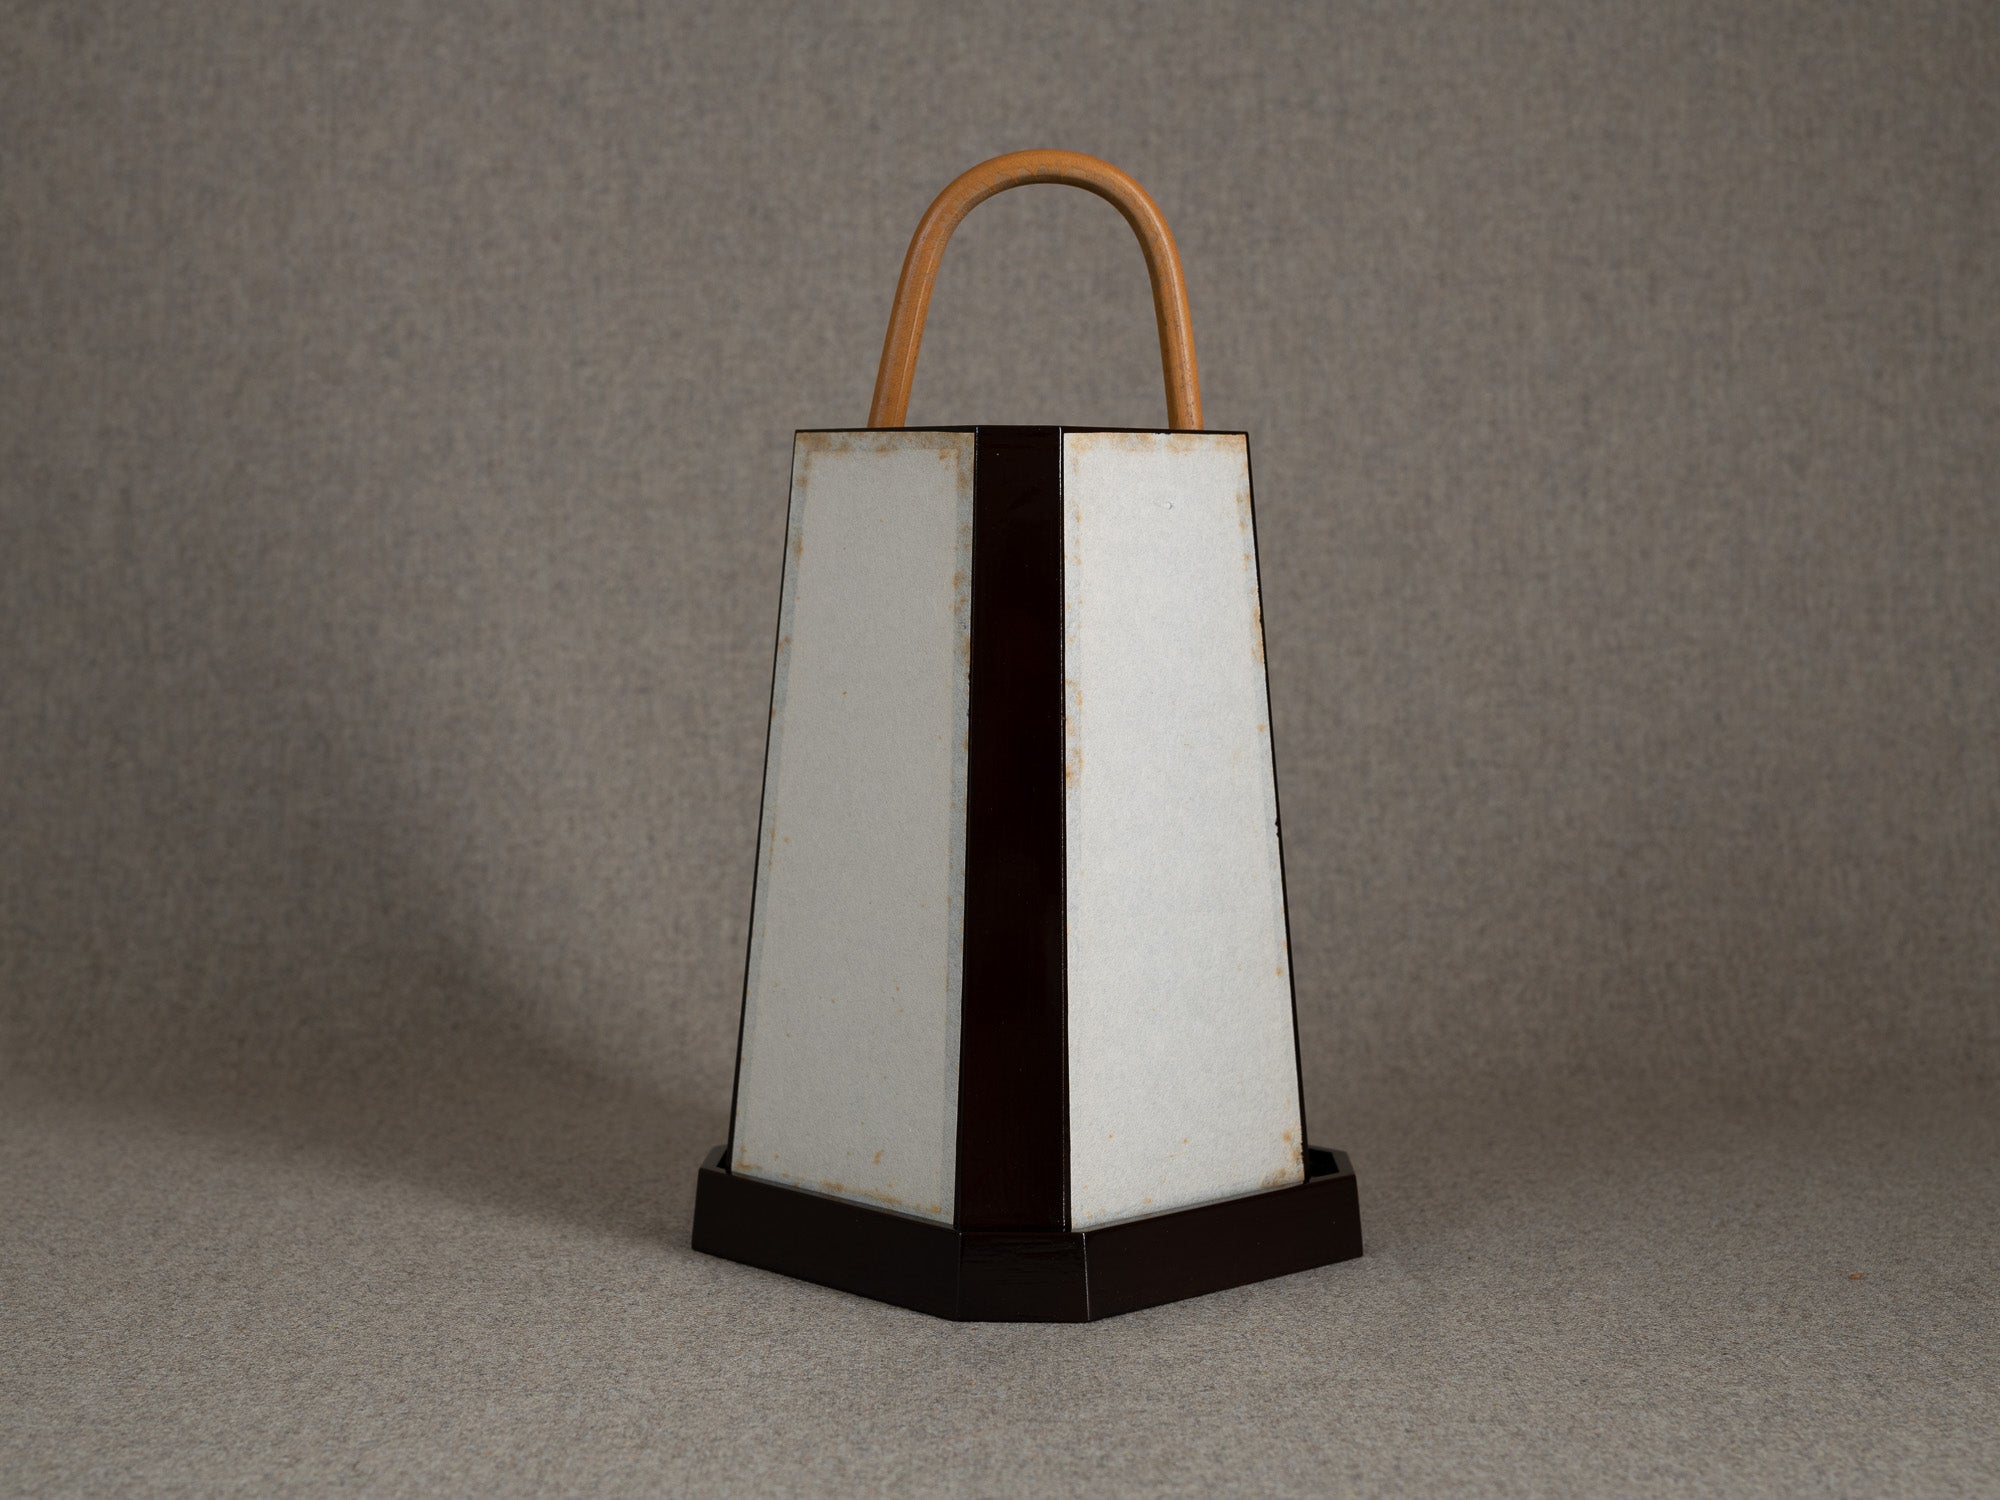 Lanterne andon en bois laqué brun, Japon (milieu du XXe siècle)..Andon lantern in brown lacquered wood, Japan (mid-20th century)